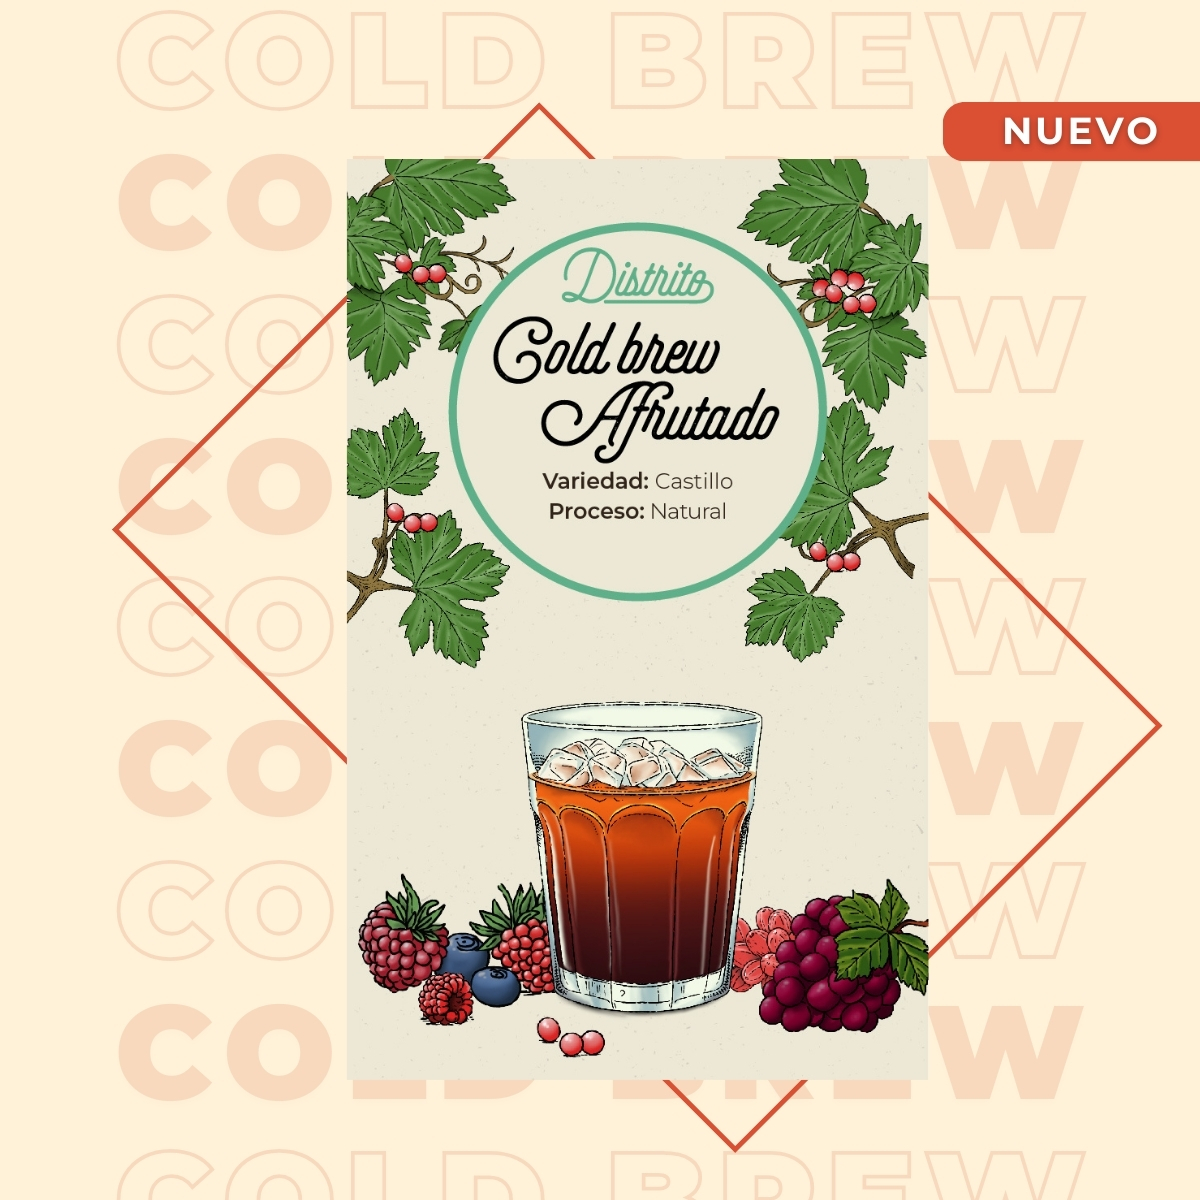 Cold brew afrutado 1 - Café Colombiano - Café de Especialidad